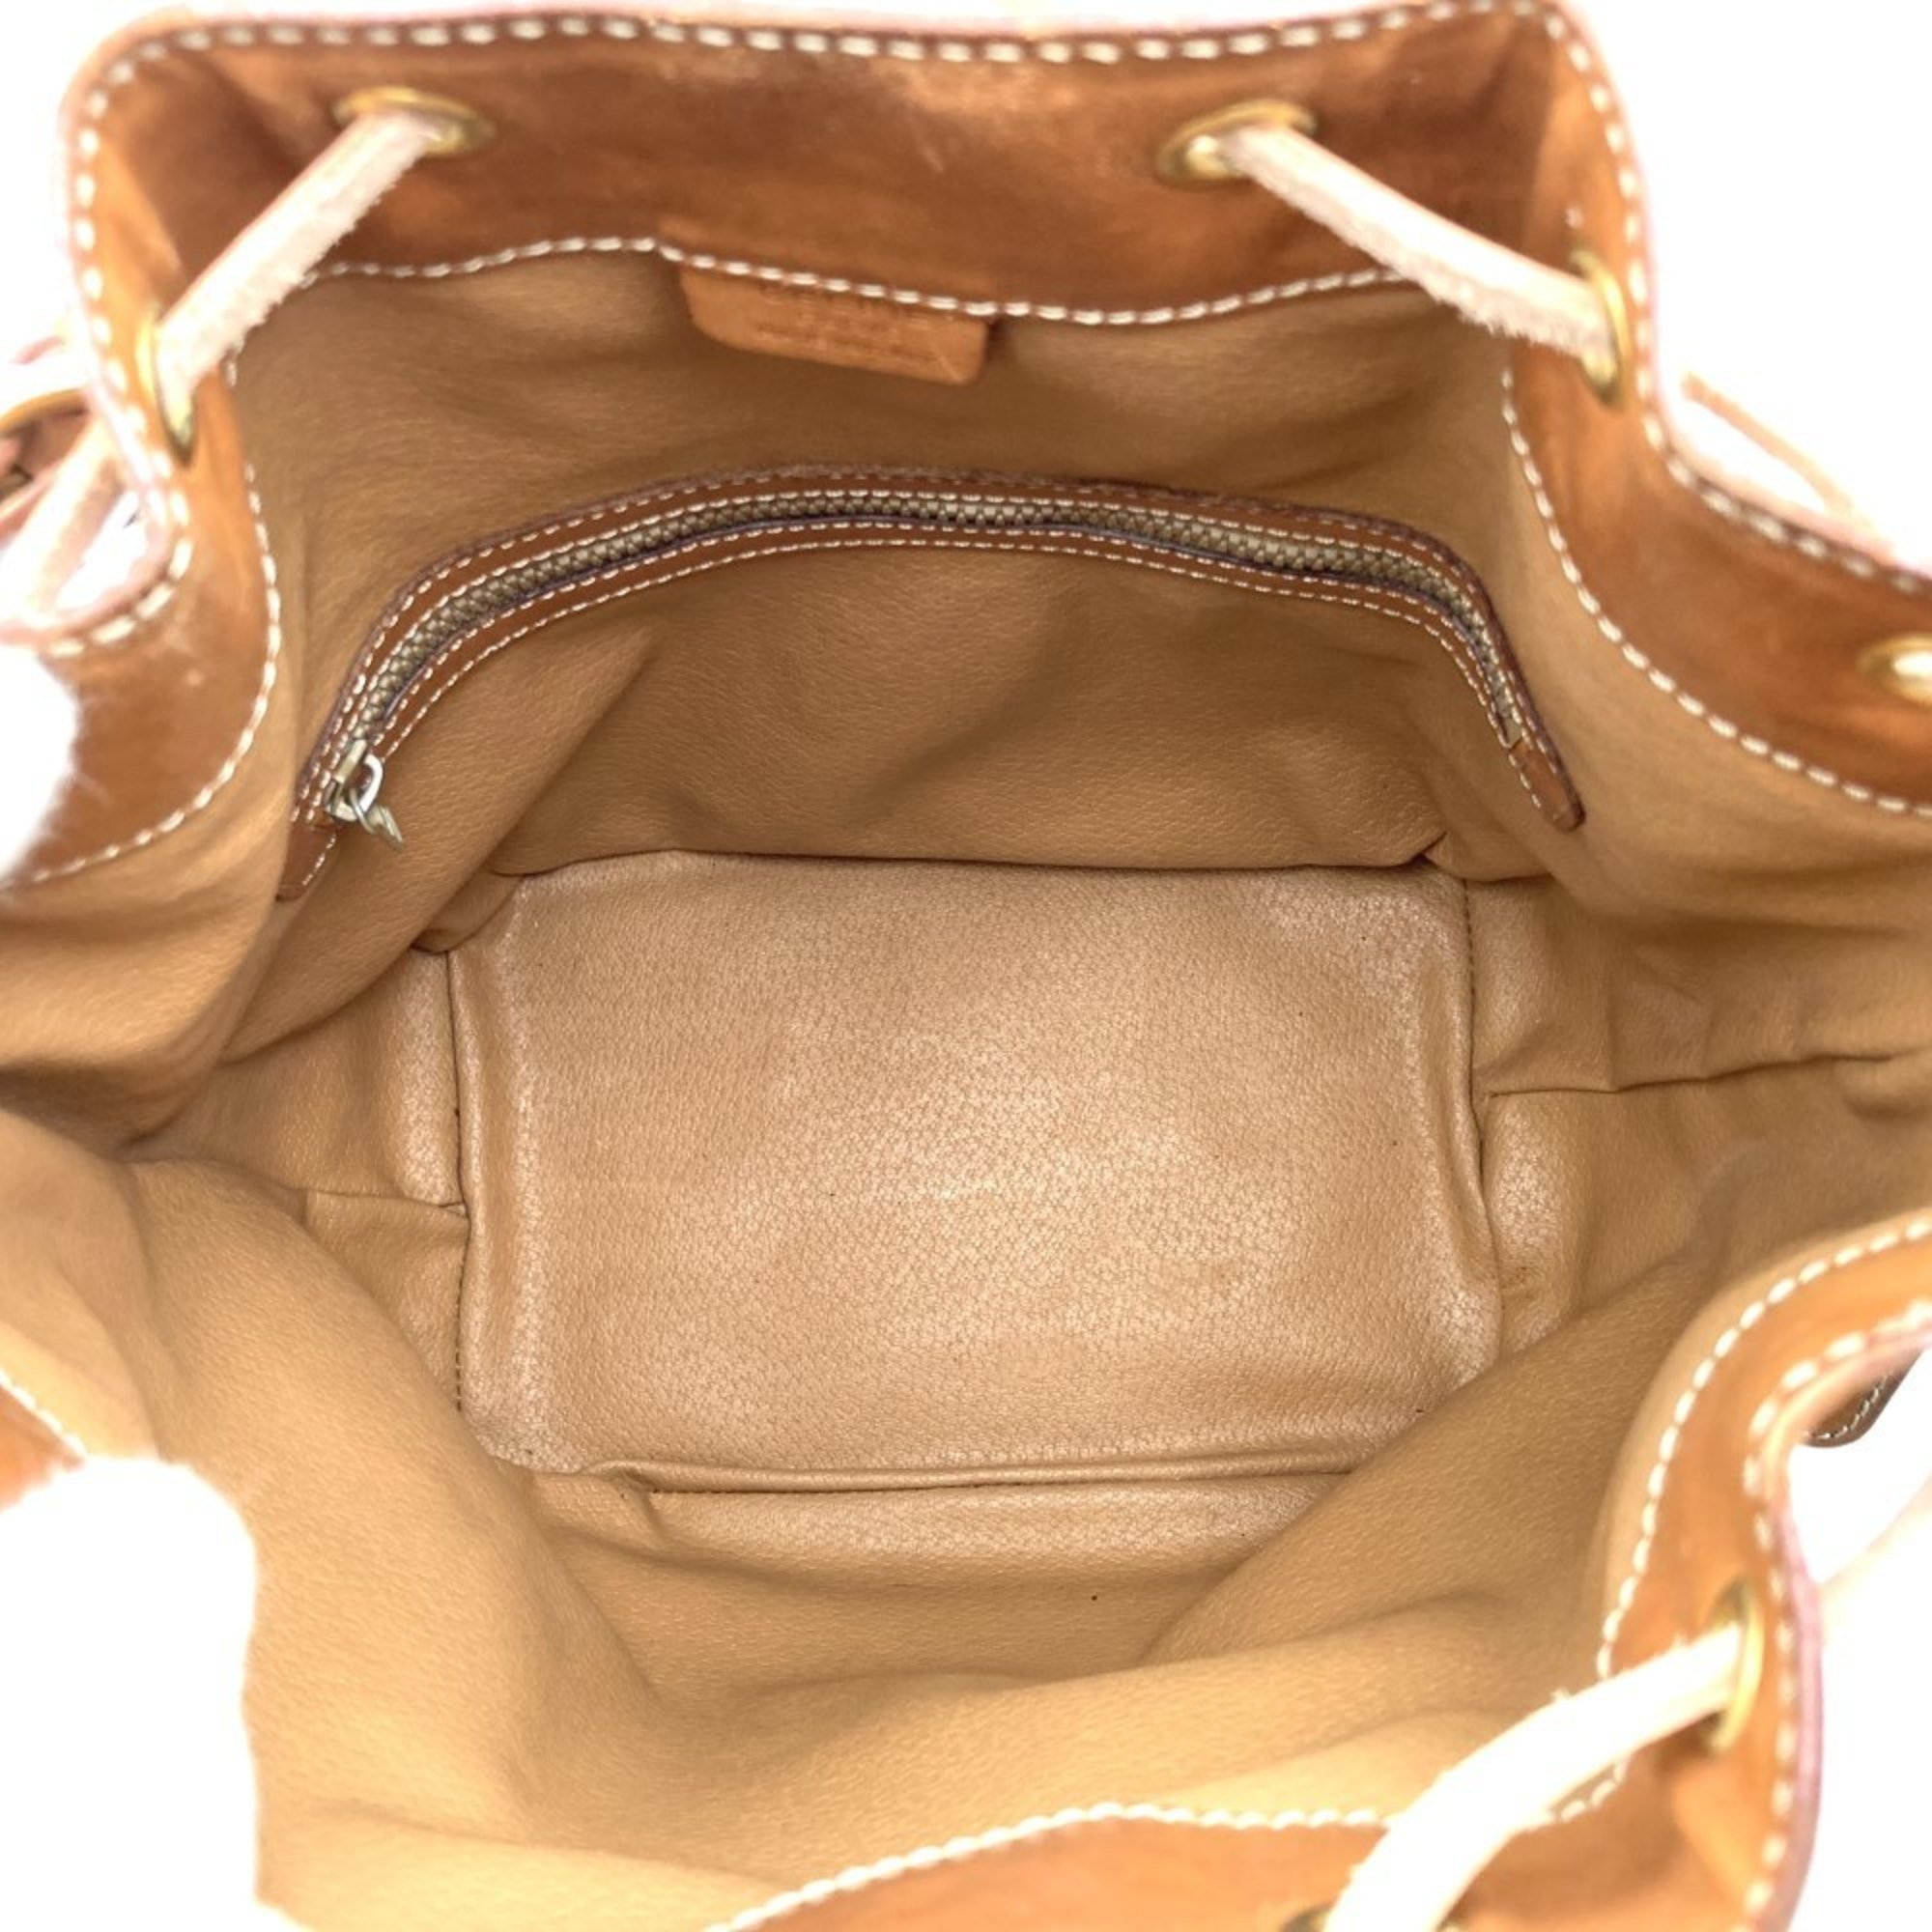 Celine shoulder bag, macadam pattern, brown leather, women's, M93 CELINE